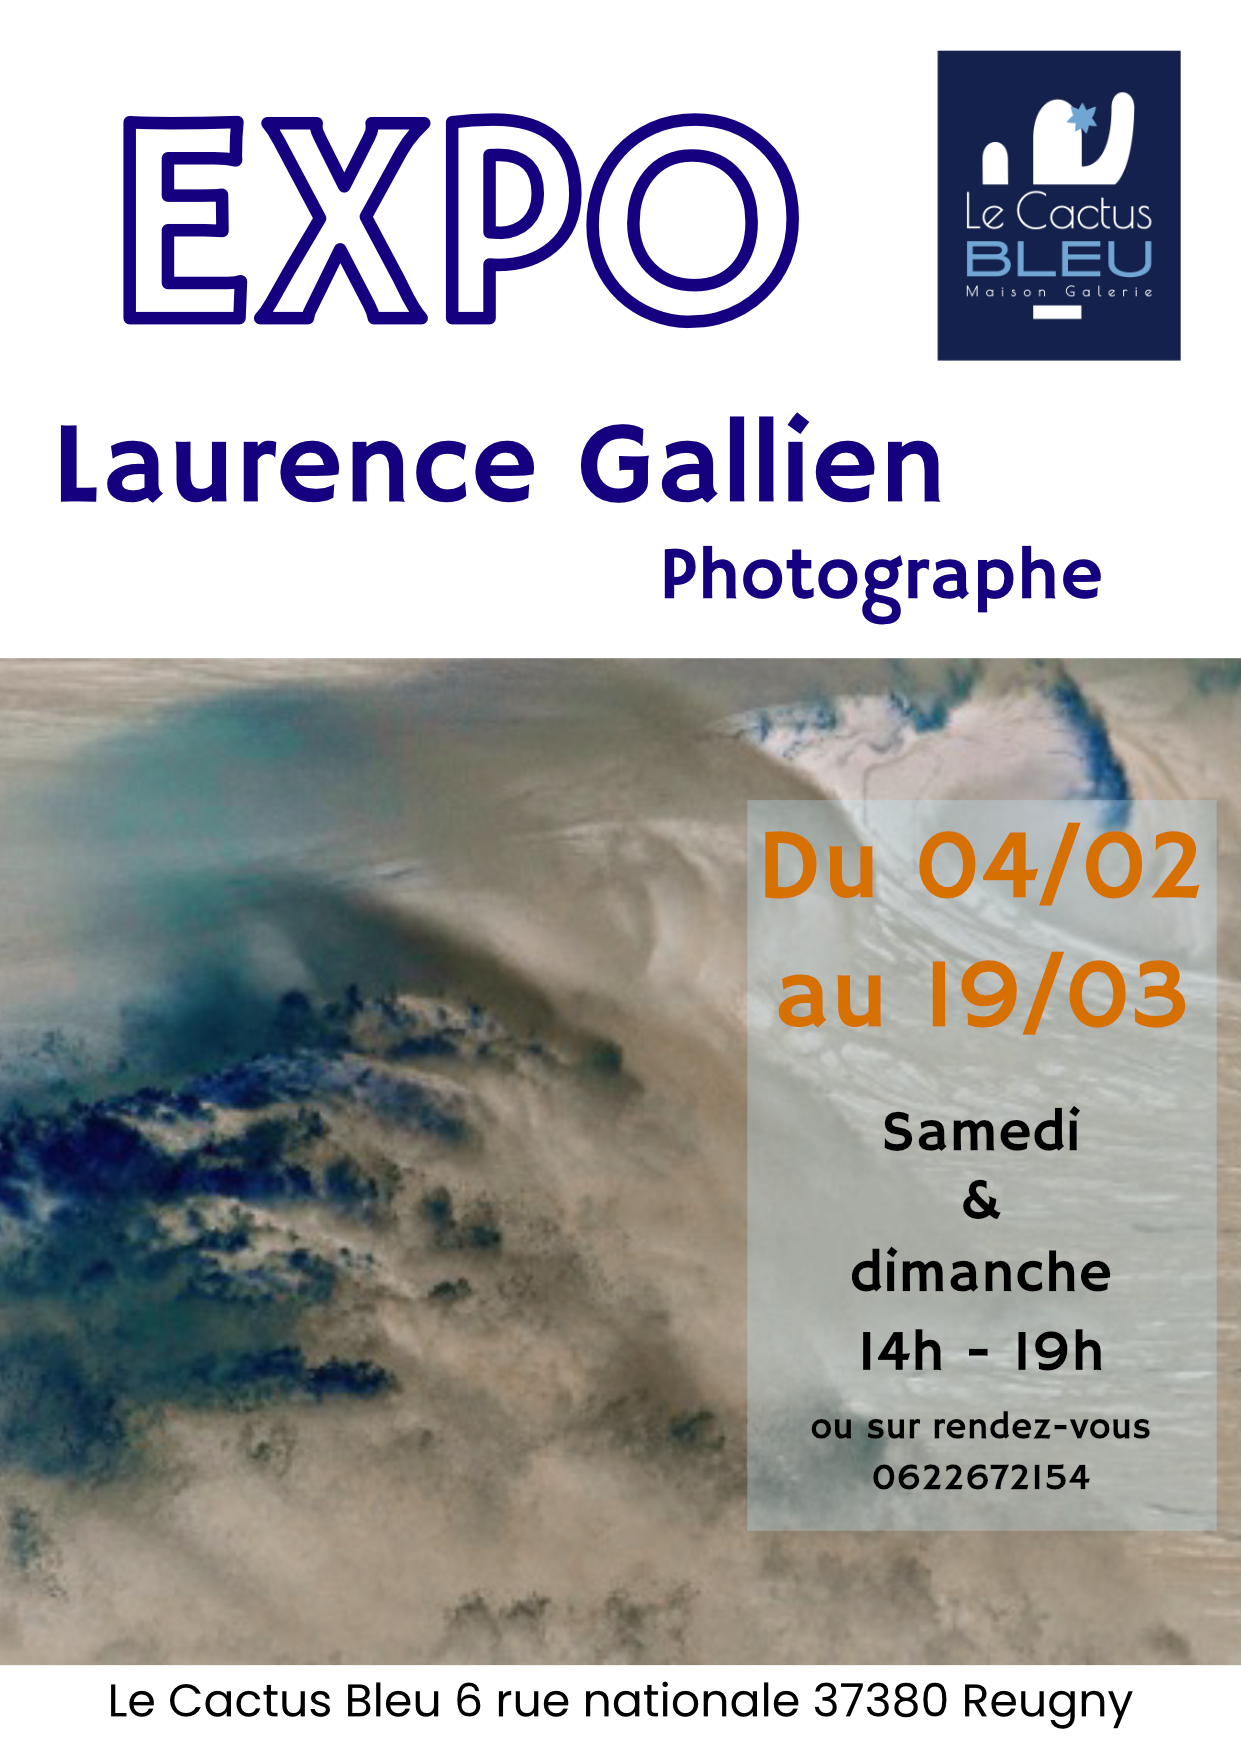 Exposition de la photographe Laurence Gallien en février et mars